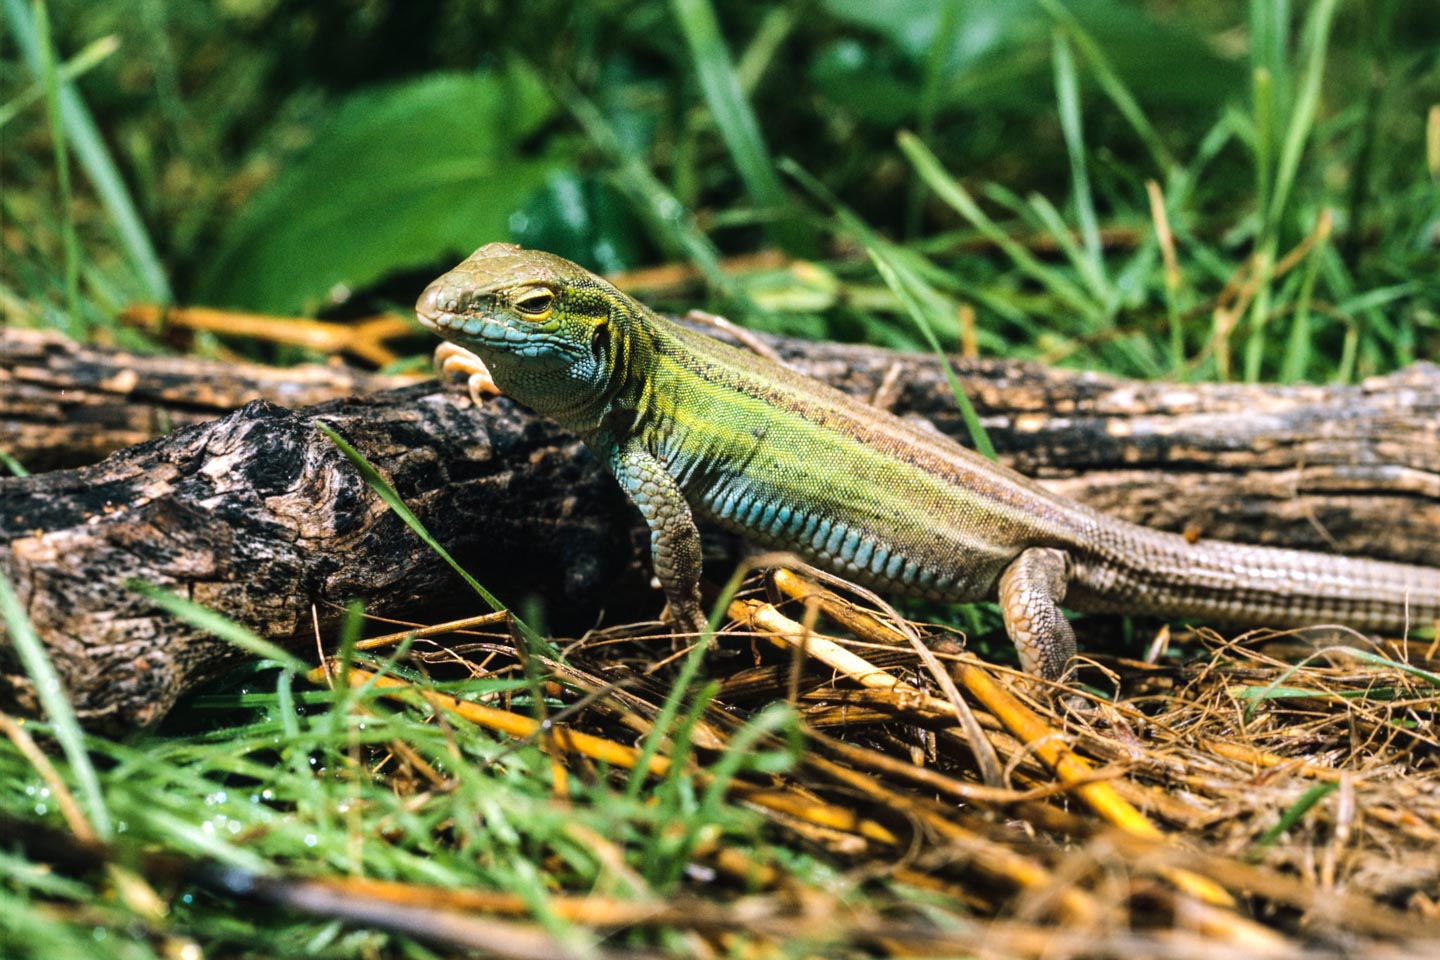 Read More: Reptiles of Nebraska